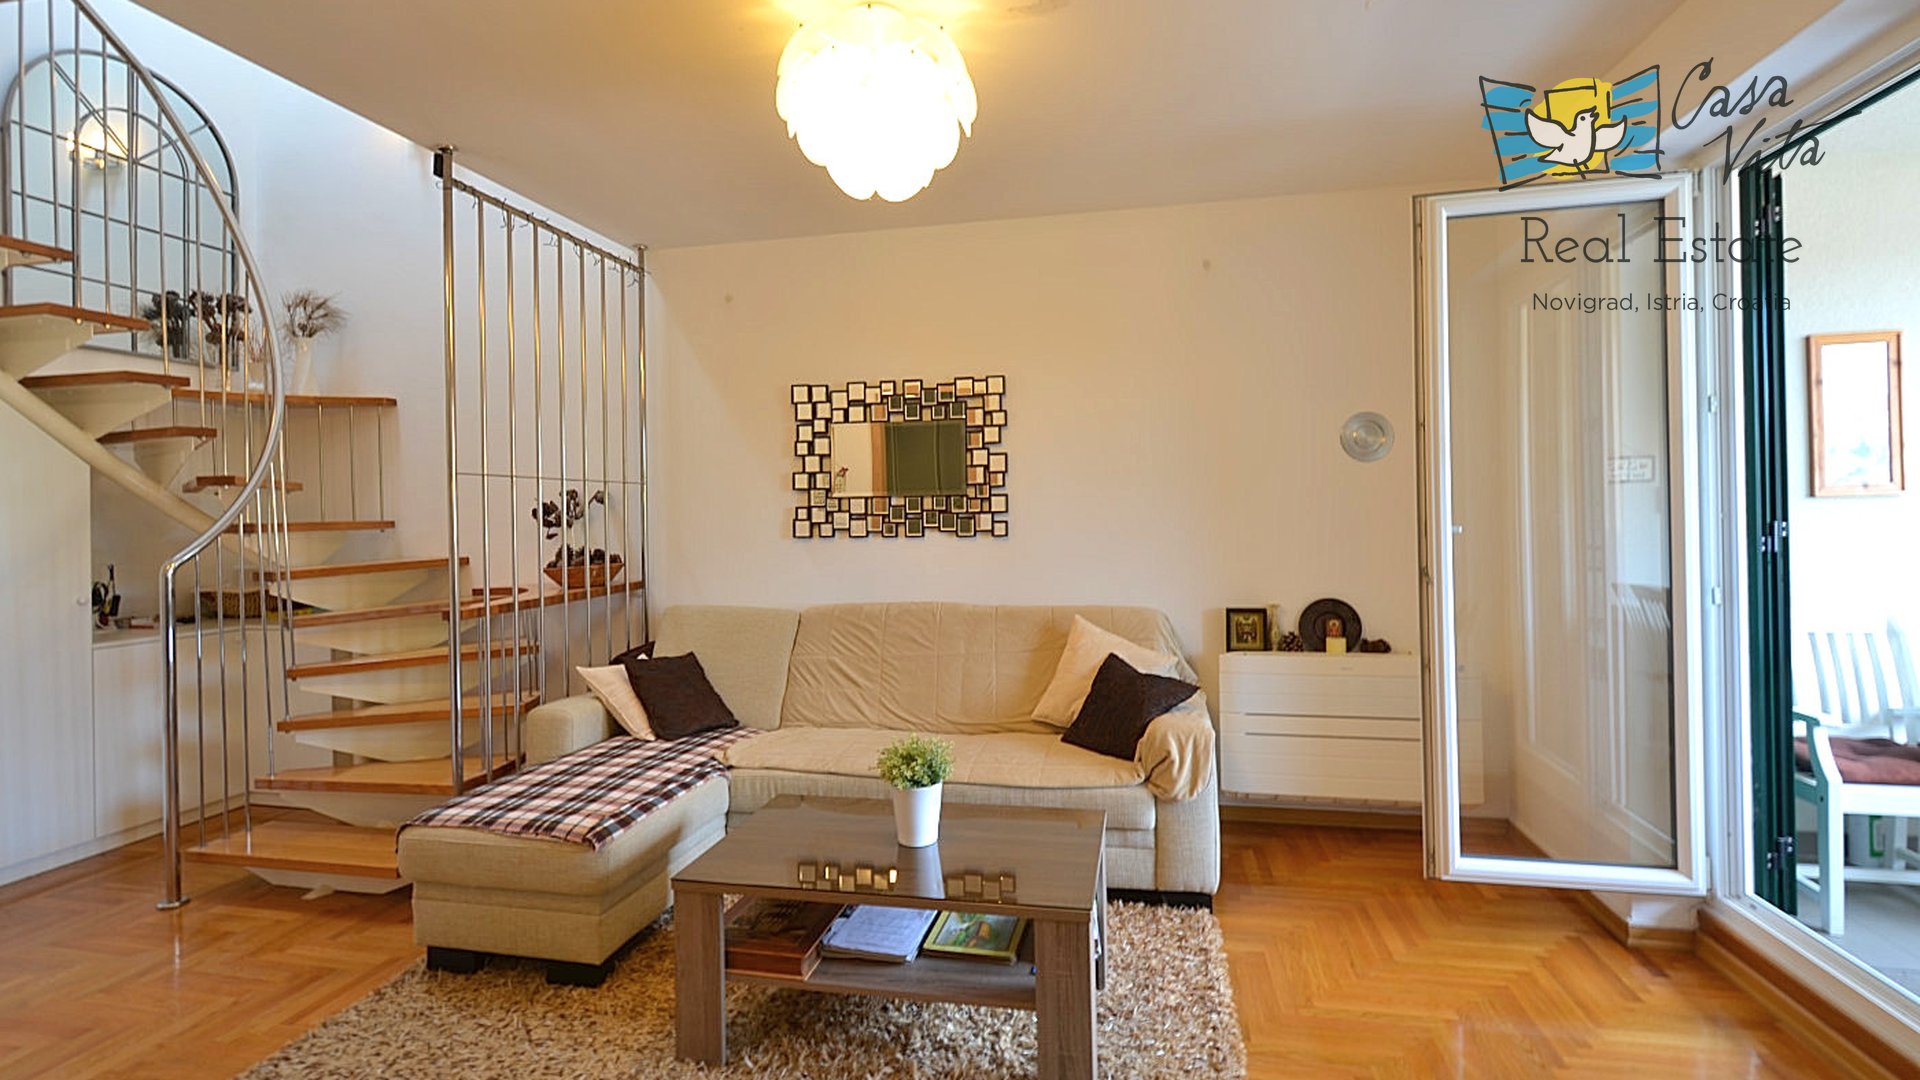 Maisonette-Wohnung in Novigrad, 200 m vom Meer entfernt!